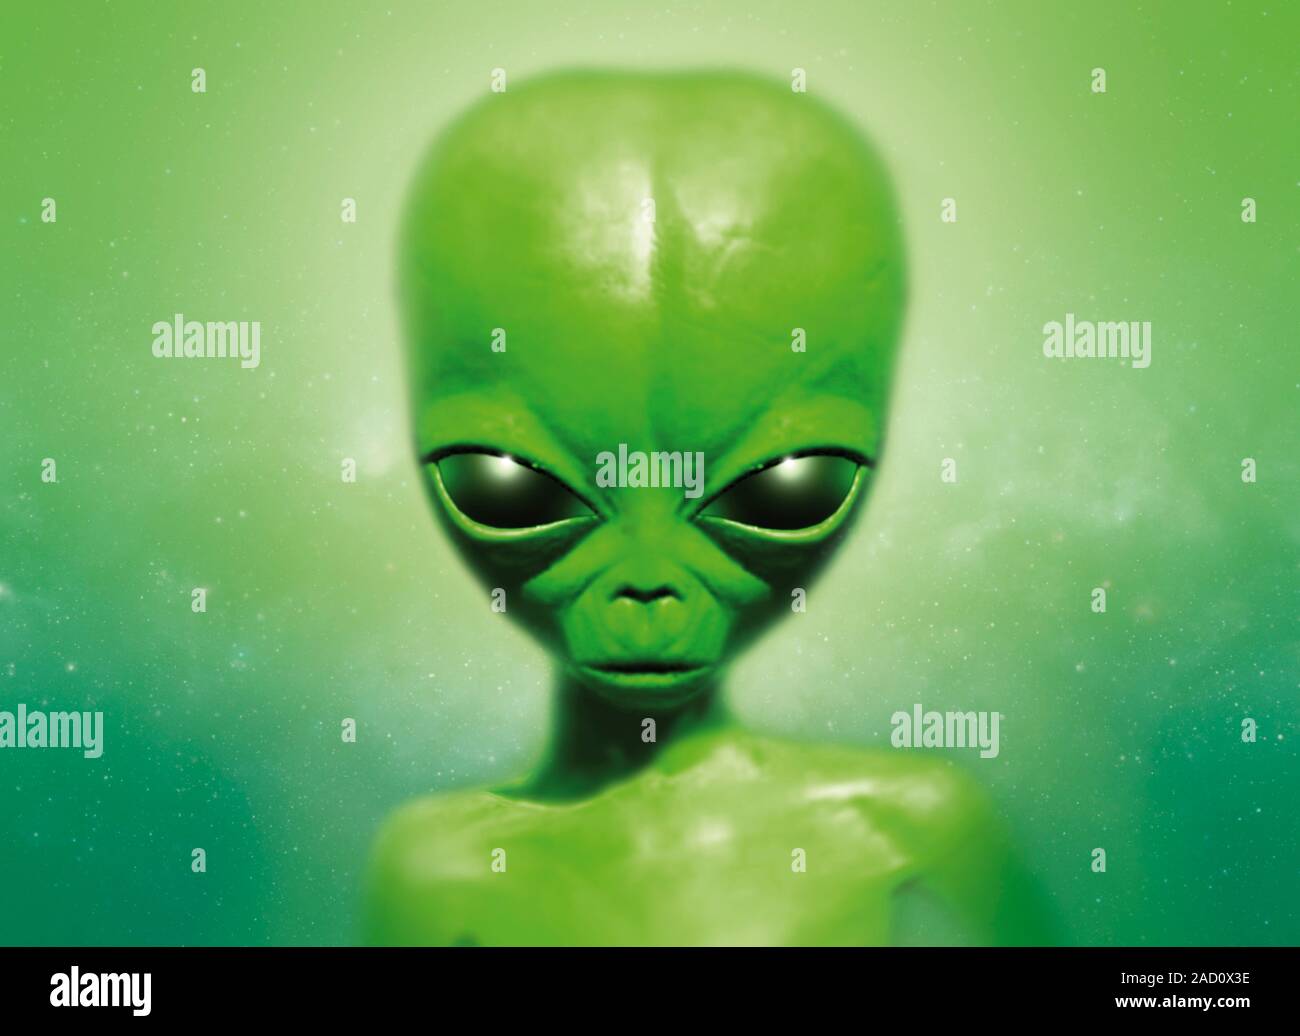 Зеленый человечек картинка. Зеленые человечки. НЛО зеленые человечки. Зеленый гуманоид. Пришелец зеленый человечек.